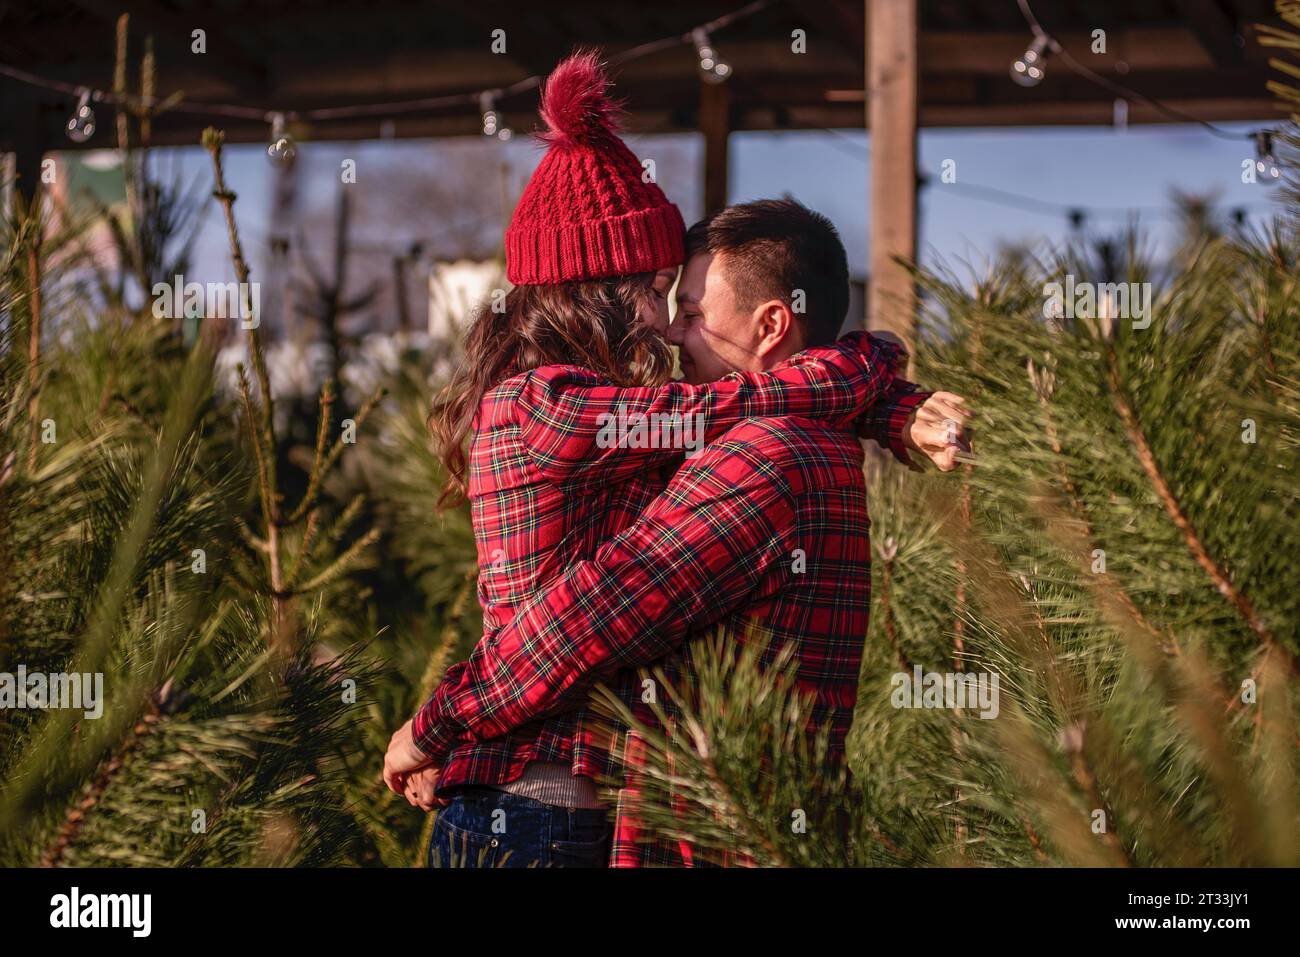 Beau couple amoureux en chemises rouges à carreaux, chapeaux tricotés serrent nez à nez face à face parmi le marché vert de l'arbre de Noël. Jeune homme Laug Banque D'Images